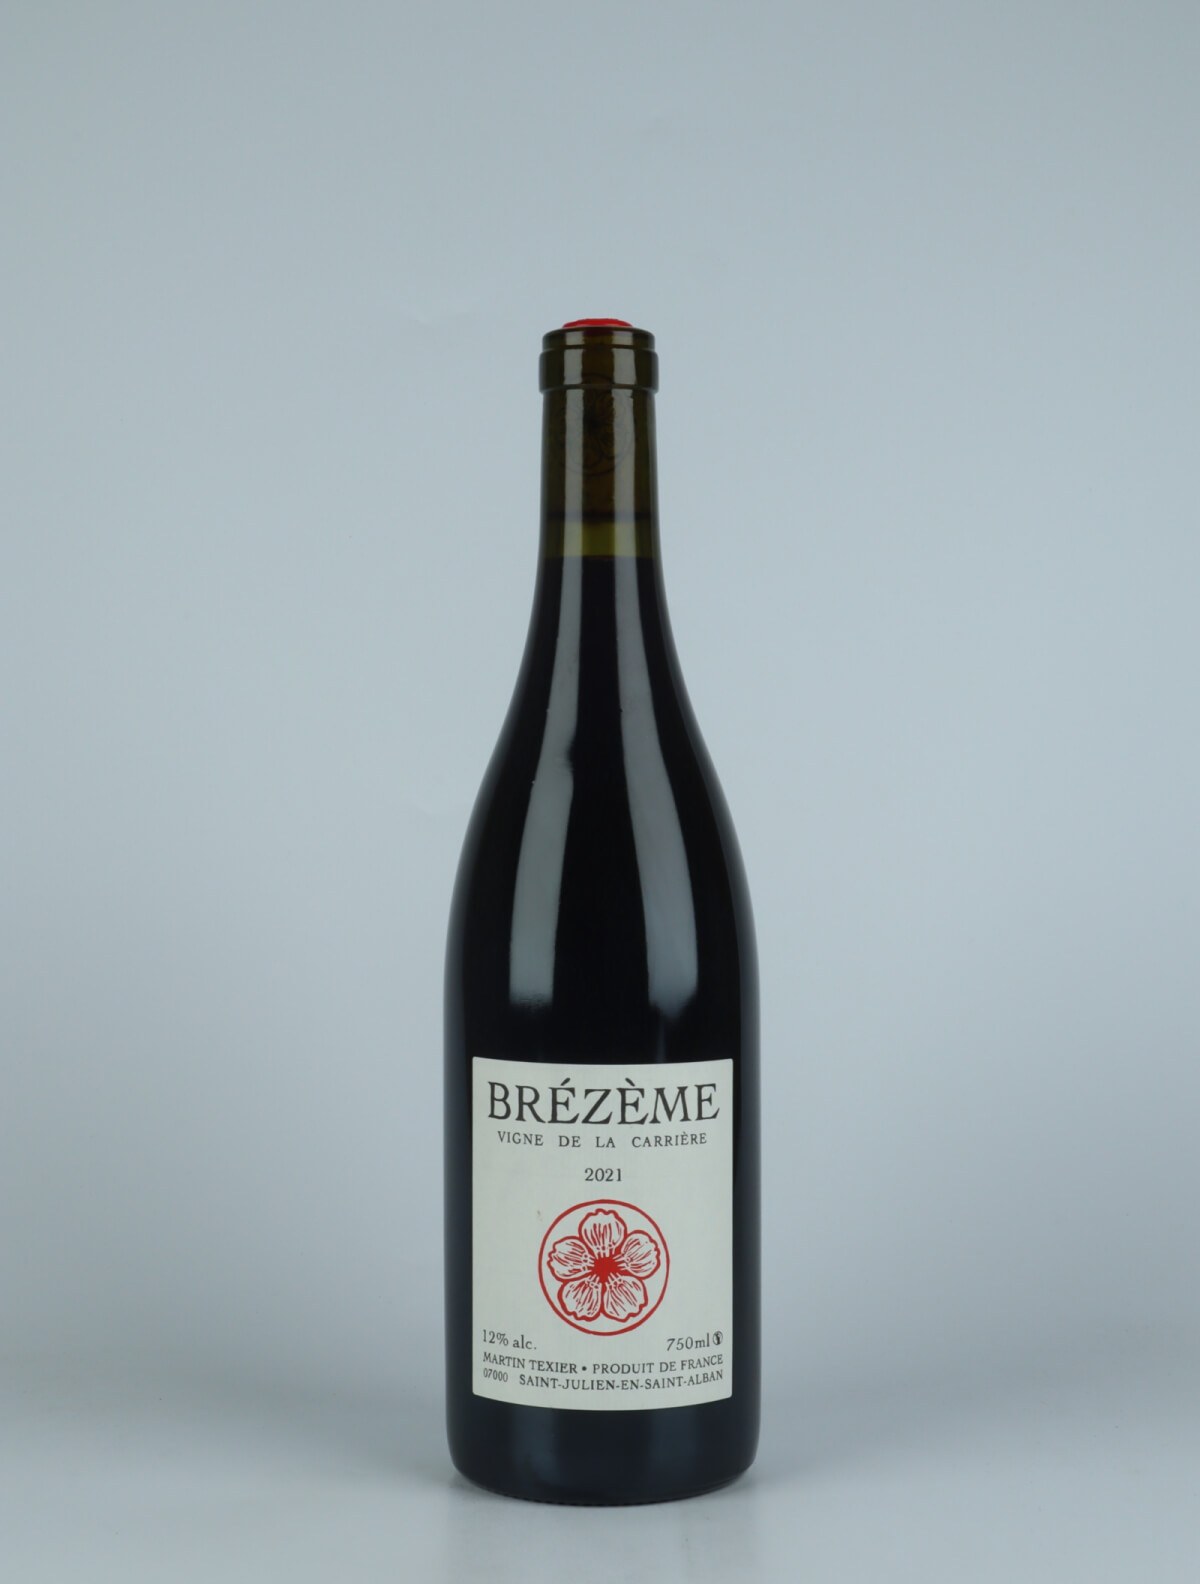 En flaske 2021 Brézème - Vigne de la Carrière Rødvin fra Martin Texier, Rhône i Frankrig